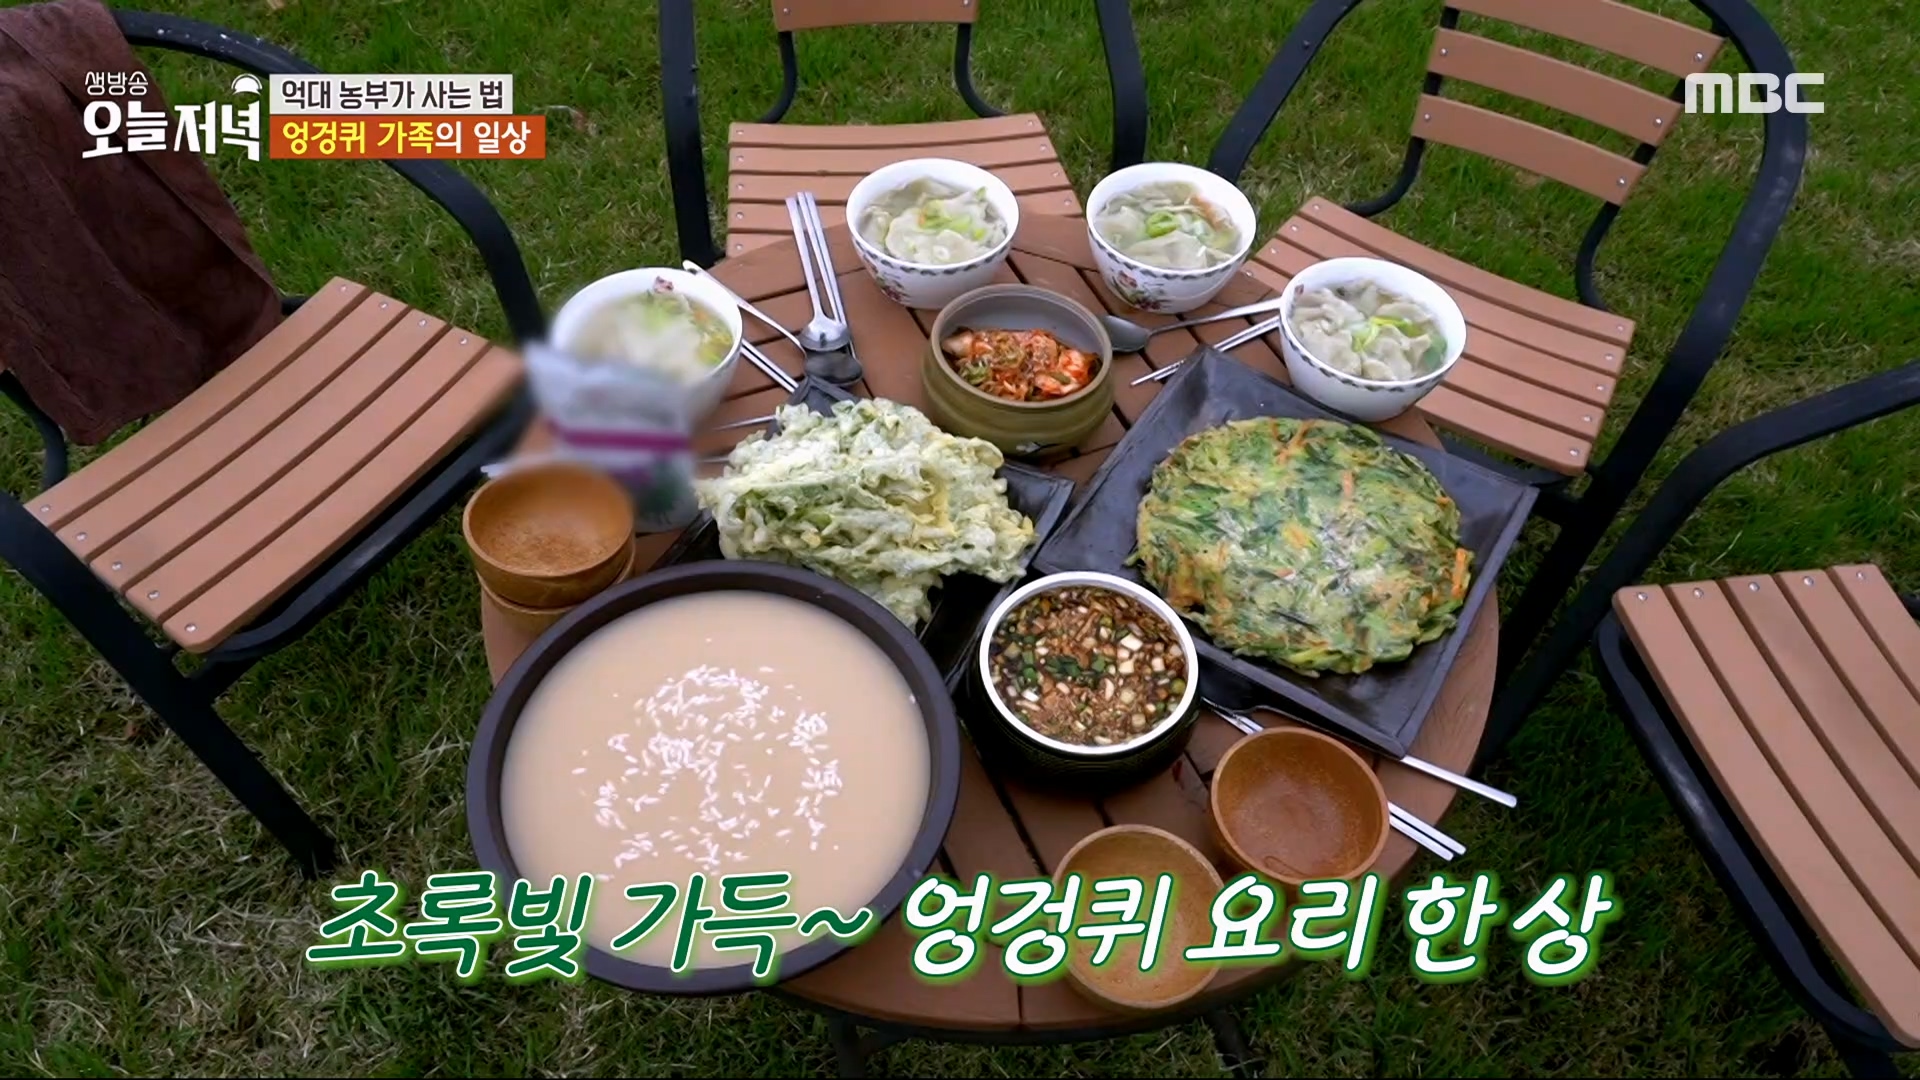 '엉겅퀴 수제비' & '엉겅퀴 튀김' 초록빛 가득한 요리 한 상!